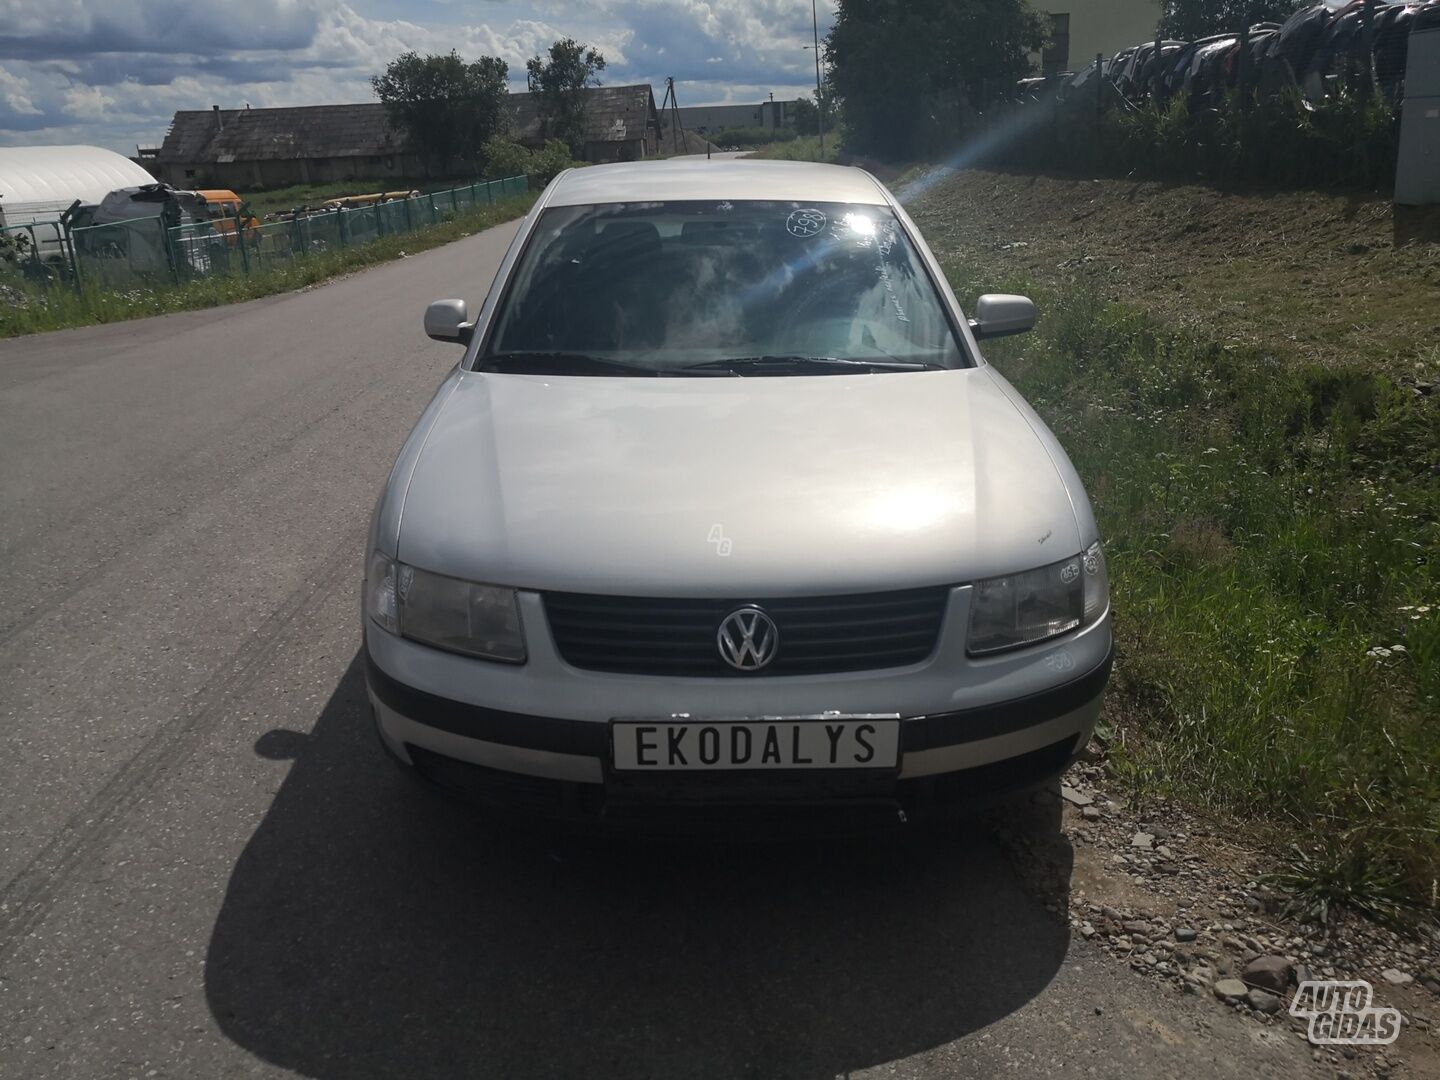 Volkswagen Passat 1999 г запчясти